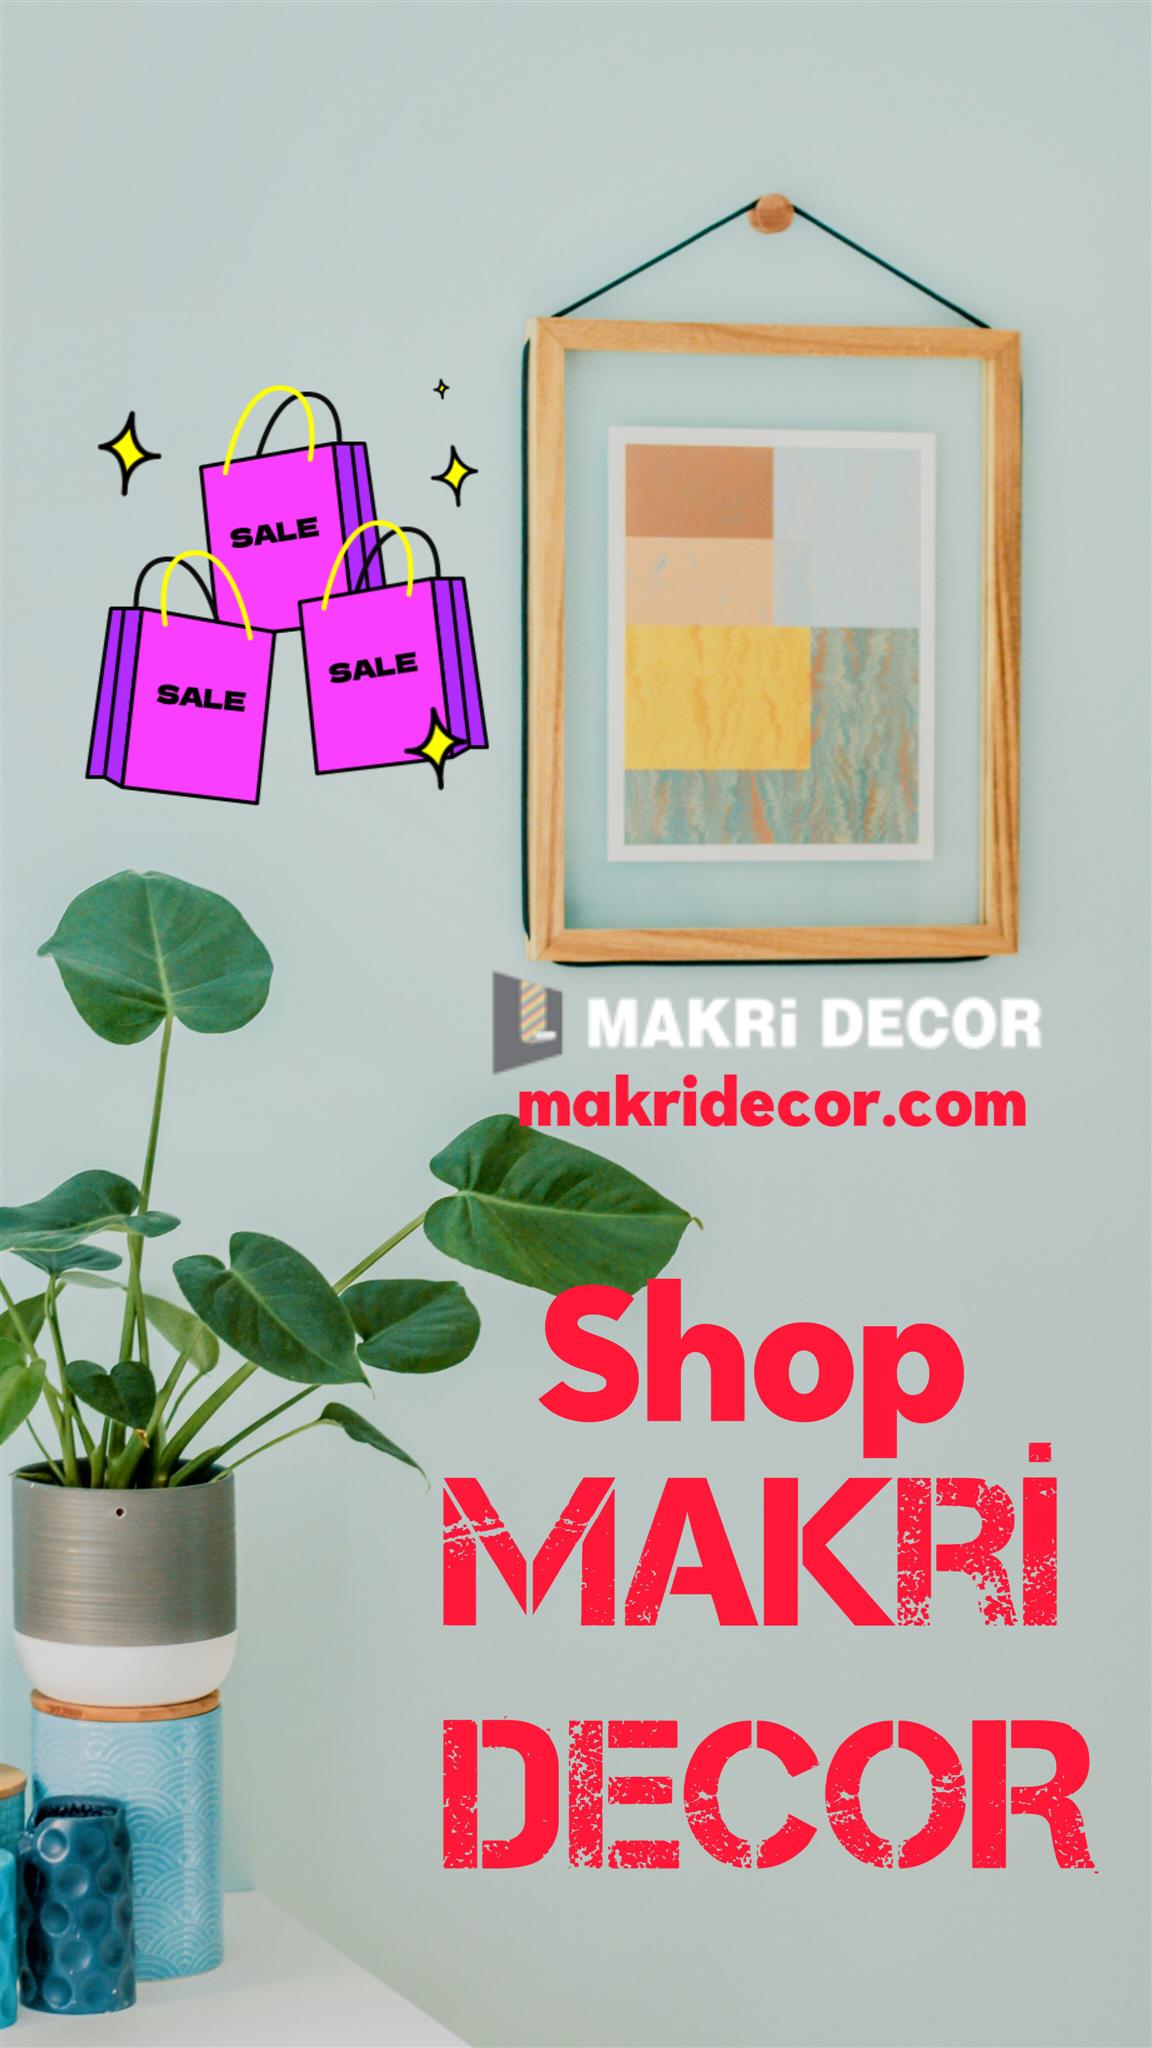 Makri decor shop